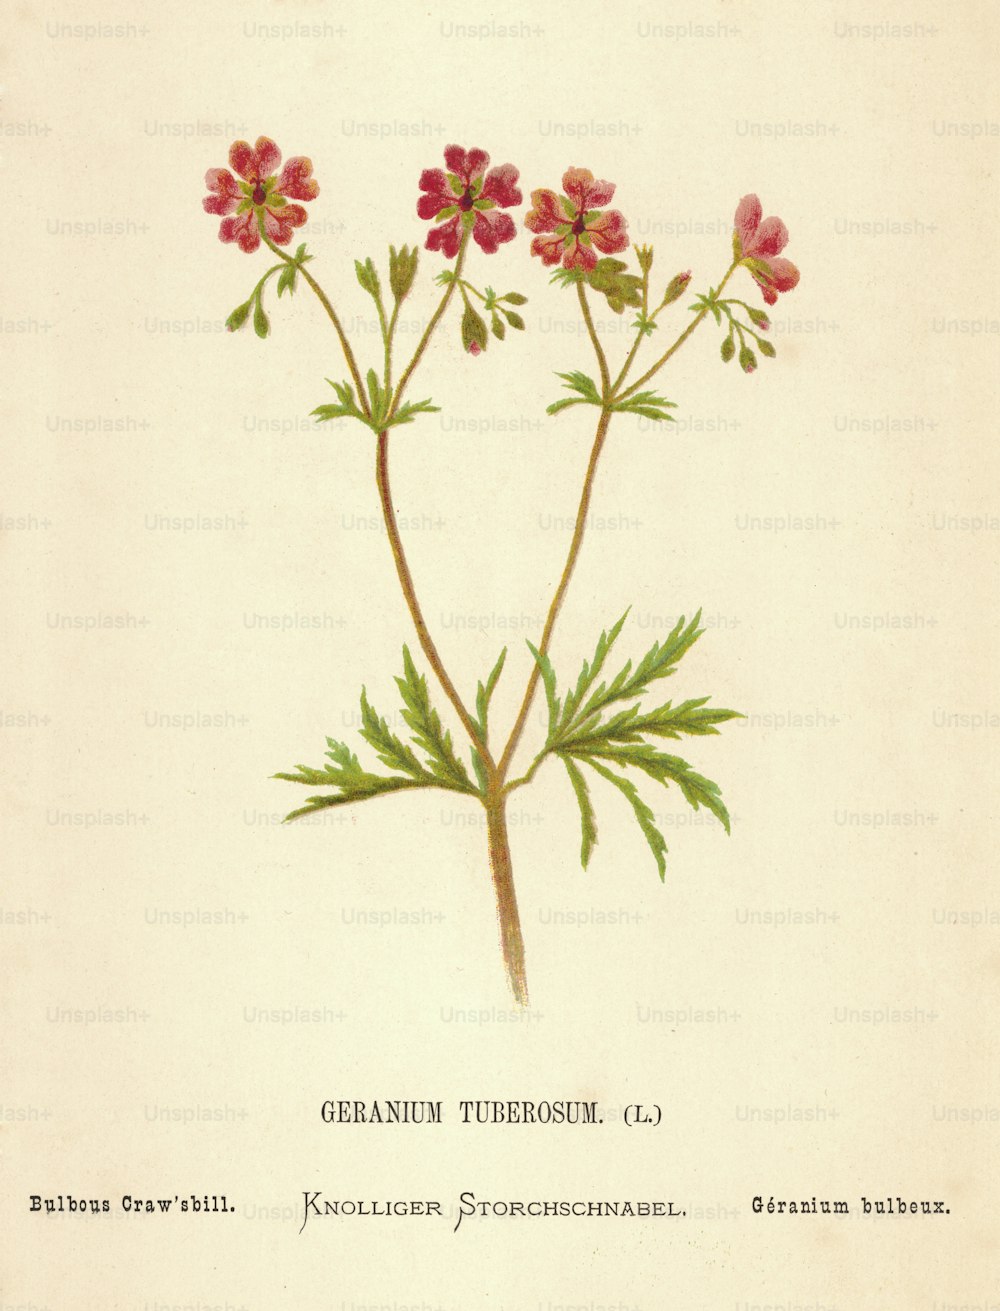 Un Geranium tuberosum rosso, o Bulbous Craw'sbill, 1850 circa. (Foto di Hulton Archive/Getty Images)